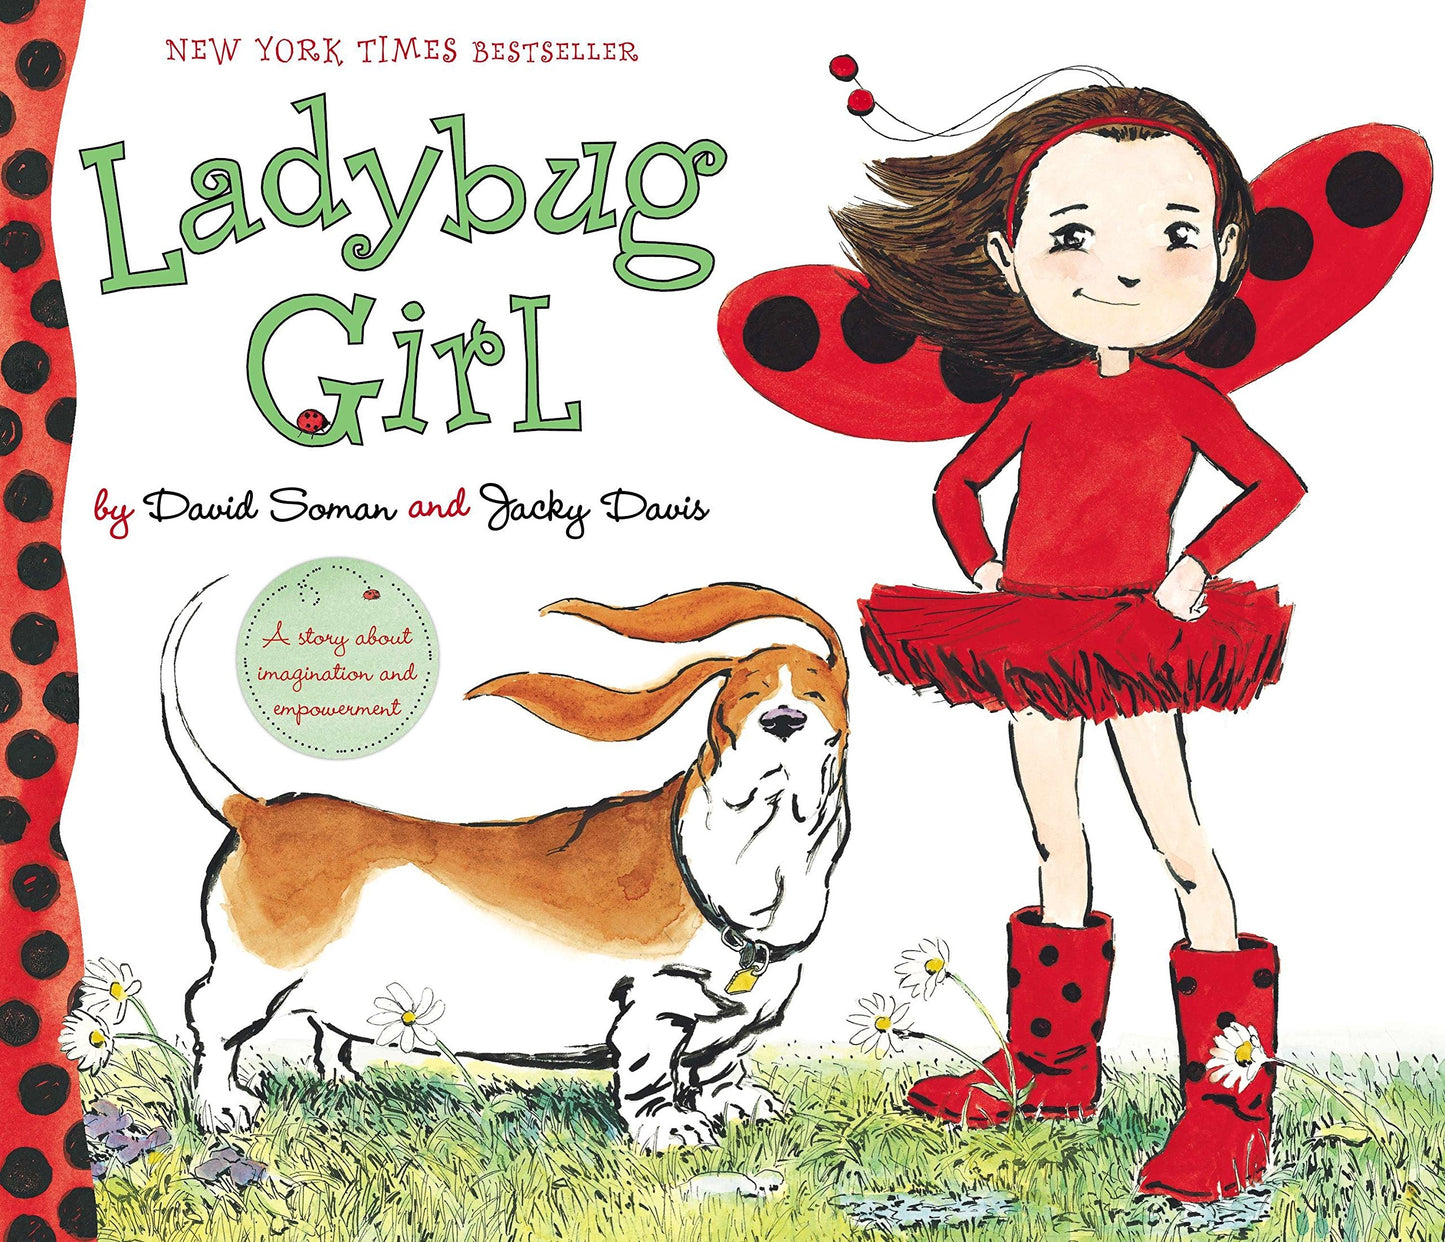 Ladybug Girl Book